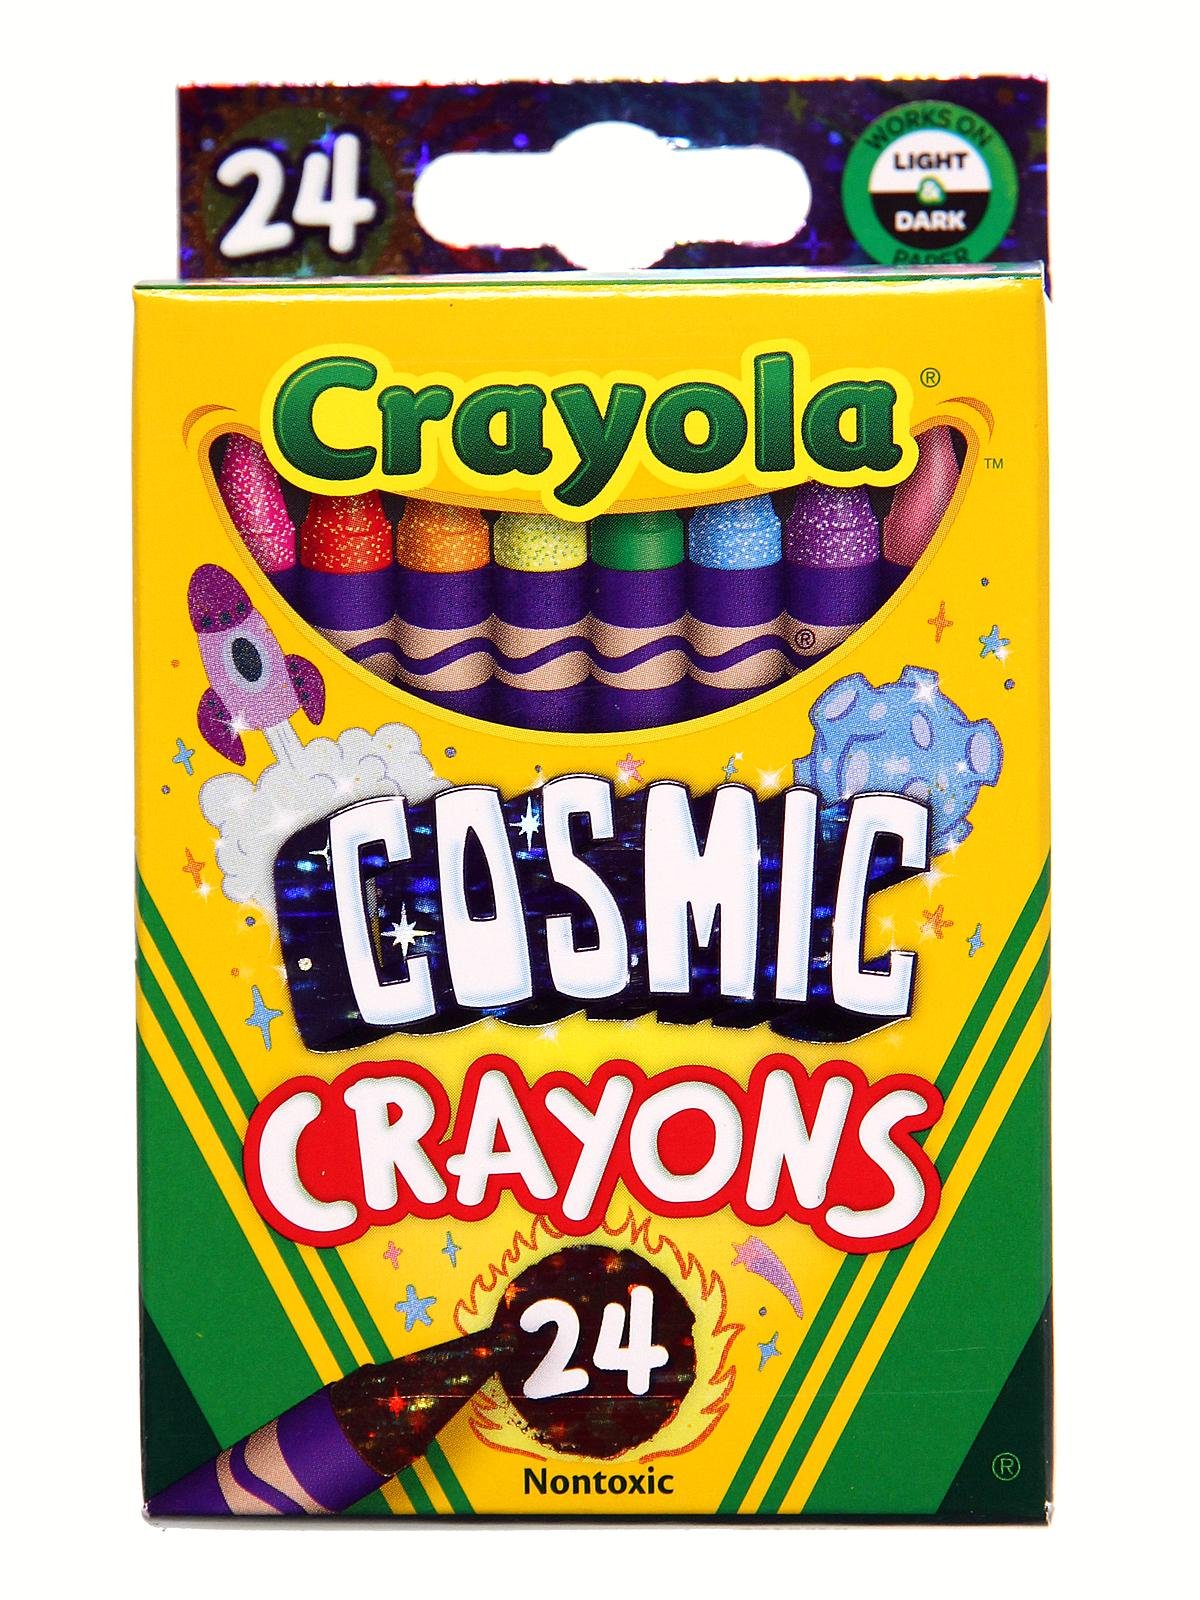 Crayola Cosmic Crayons, 24 count, Crayola.com